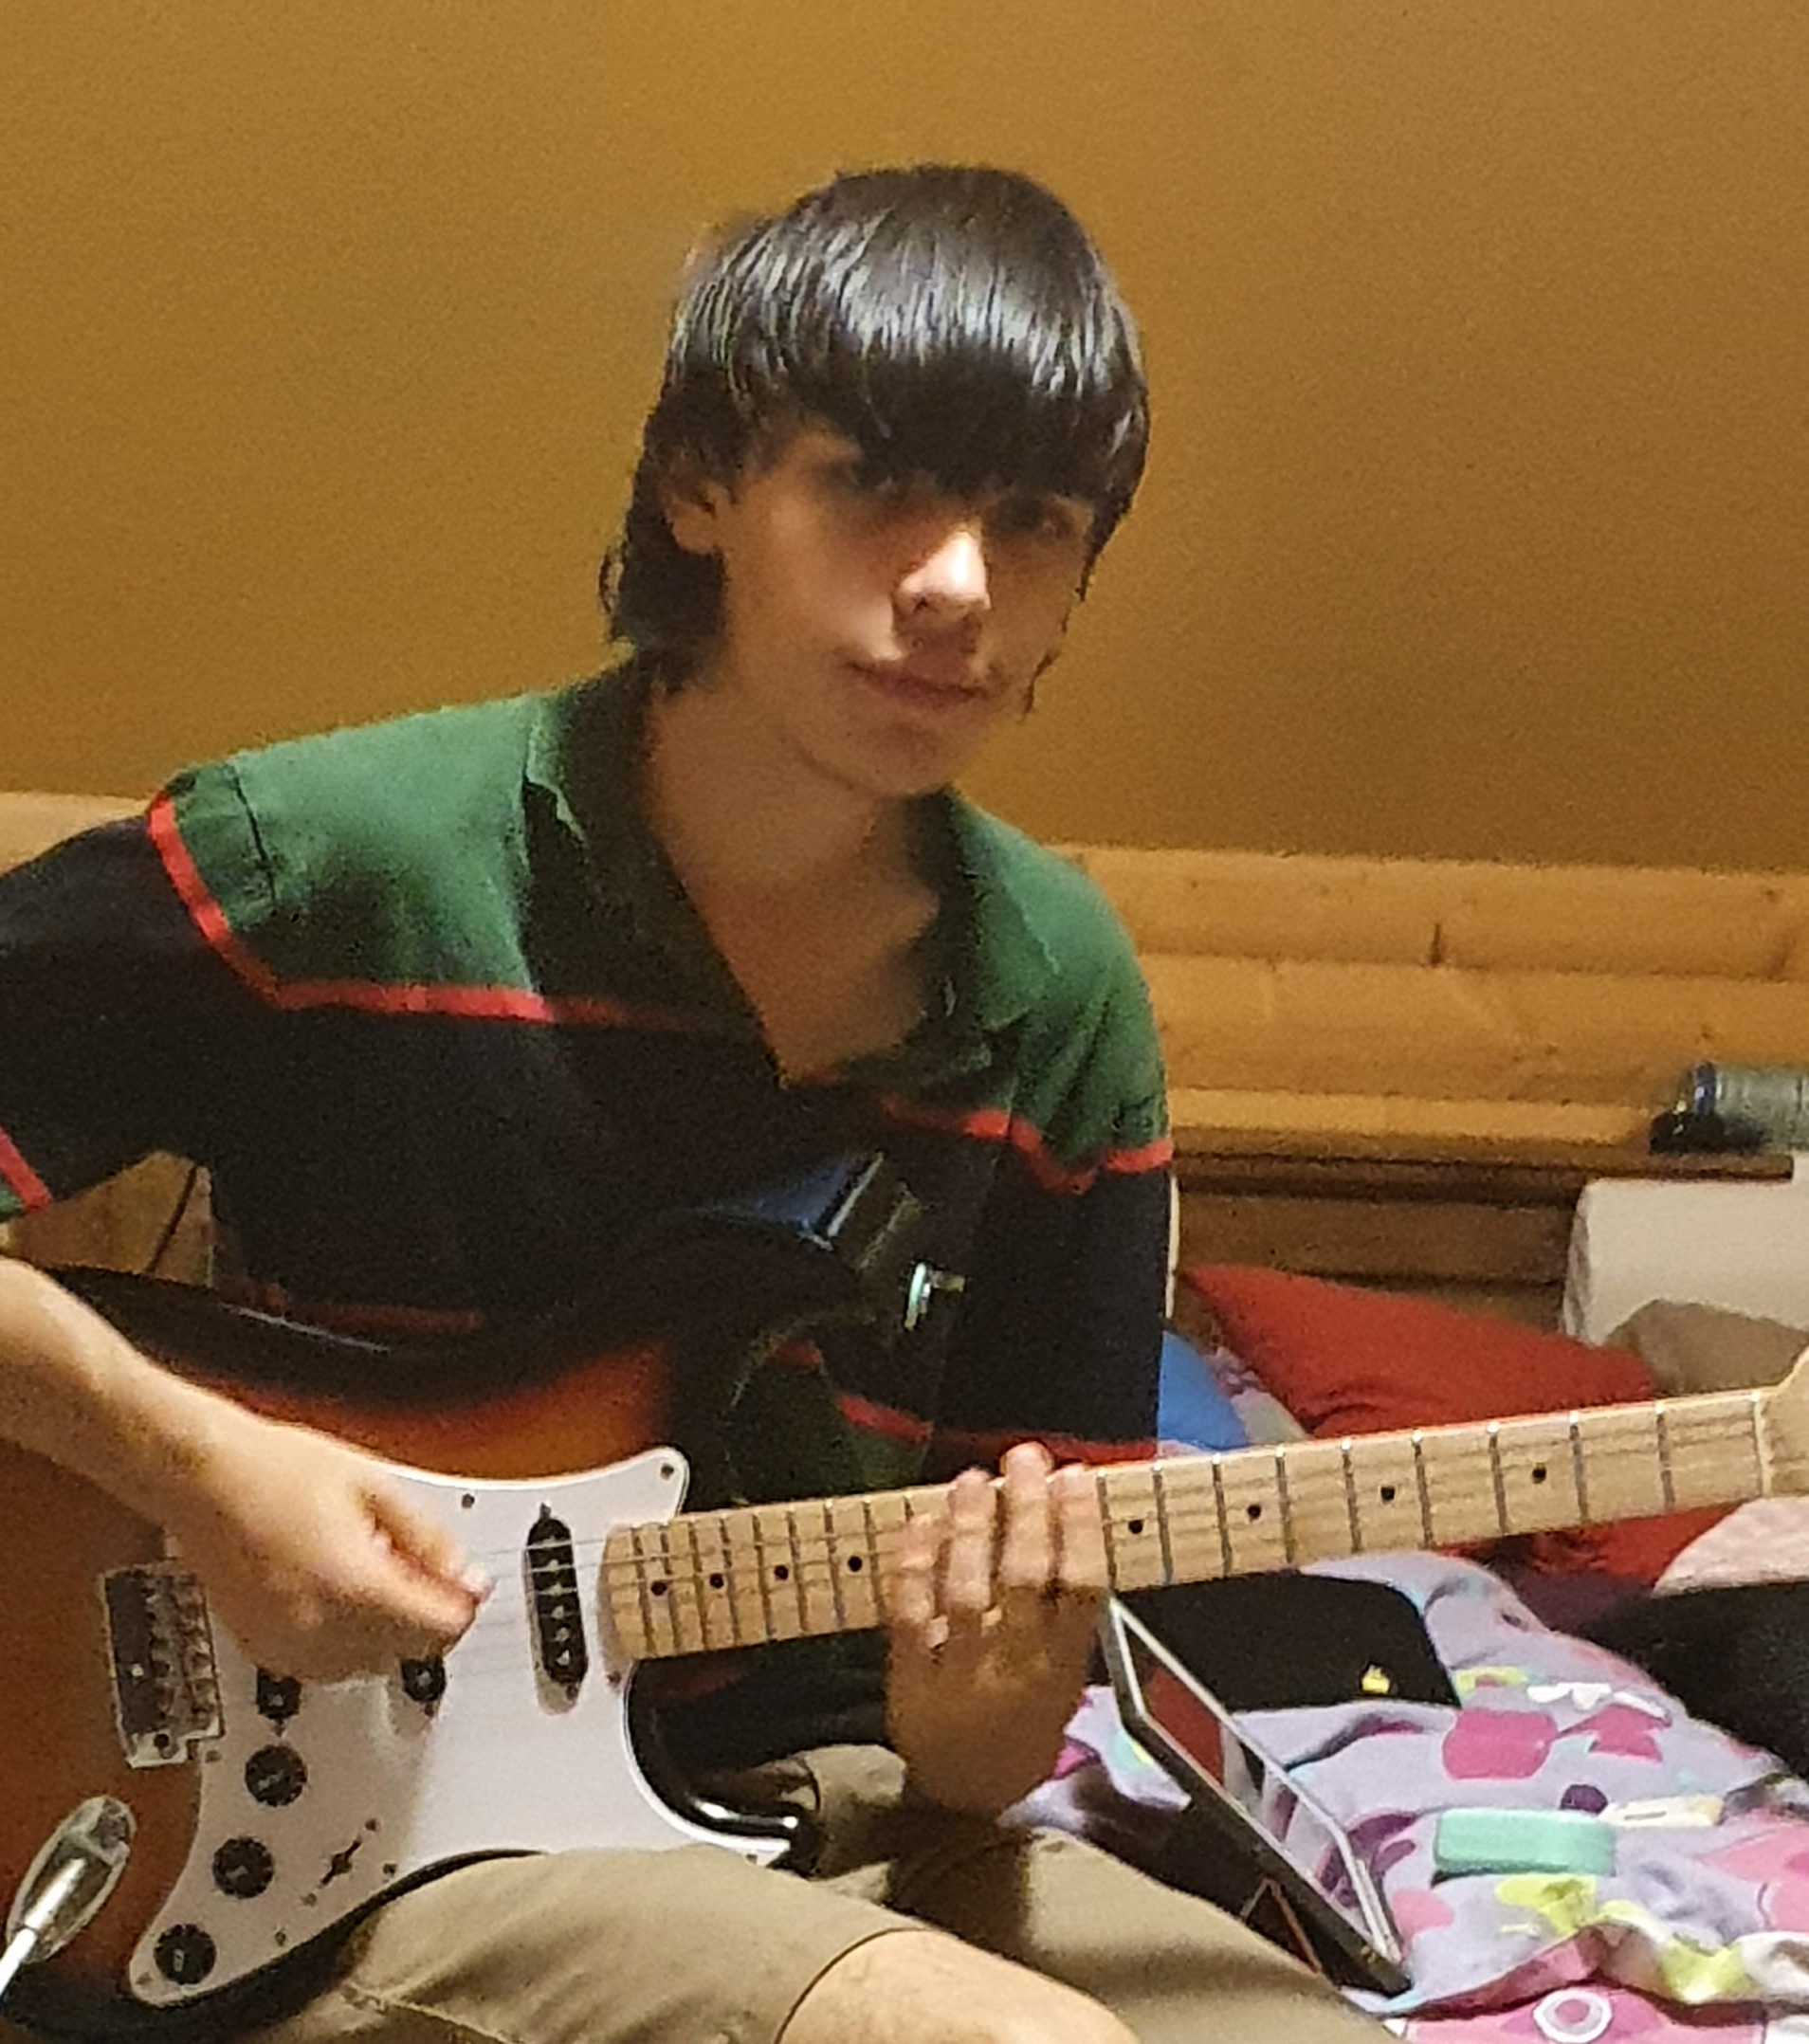 alias chlapec,ktorý kradne stále gitary (basák)